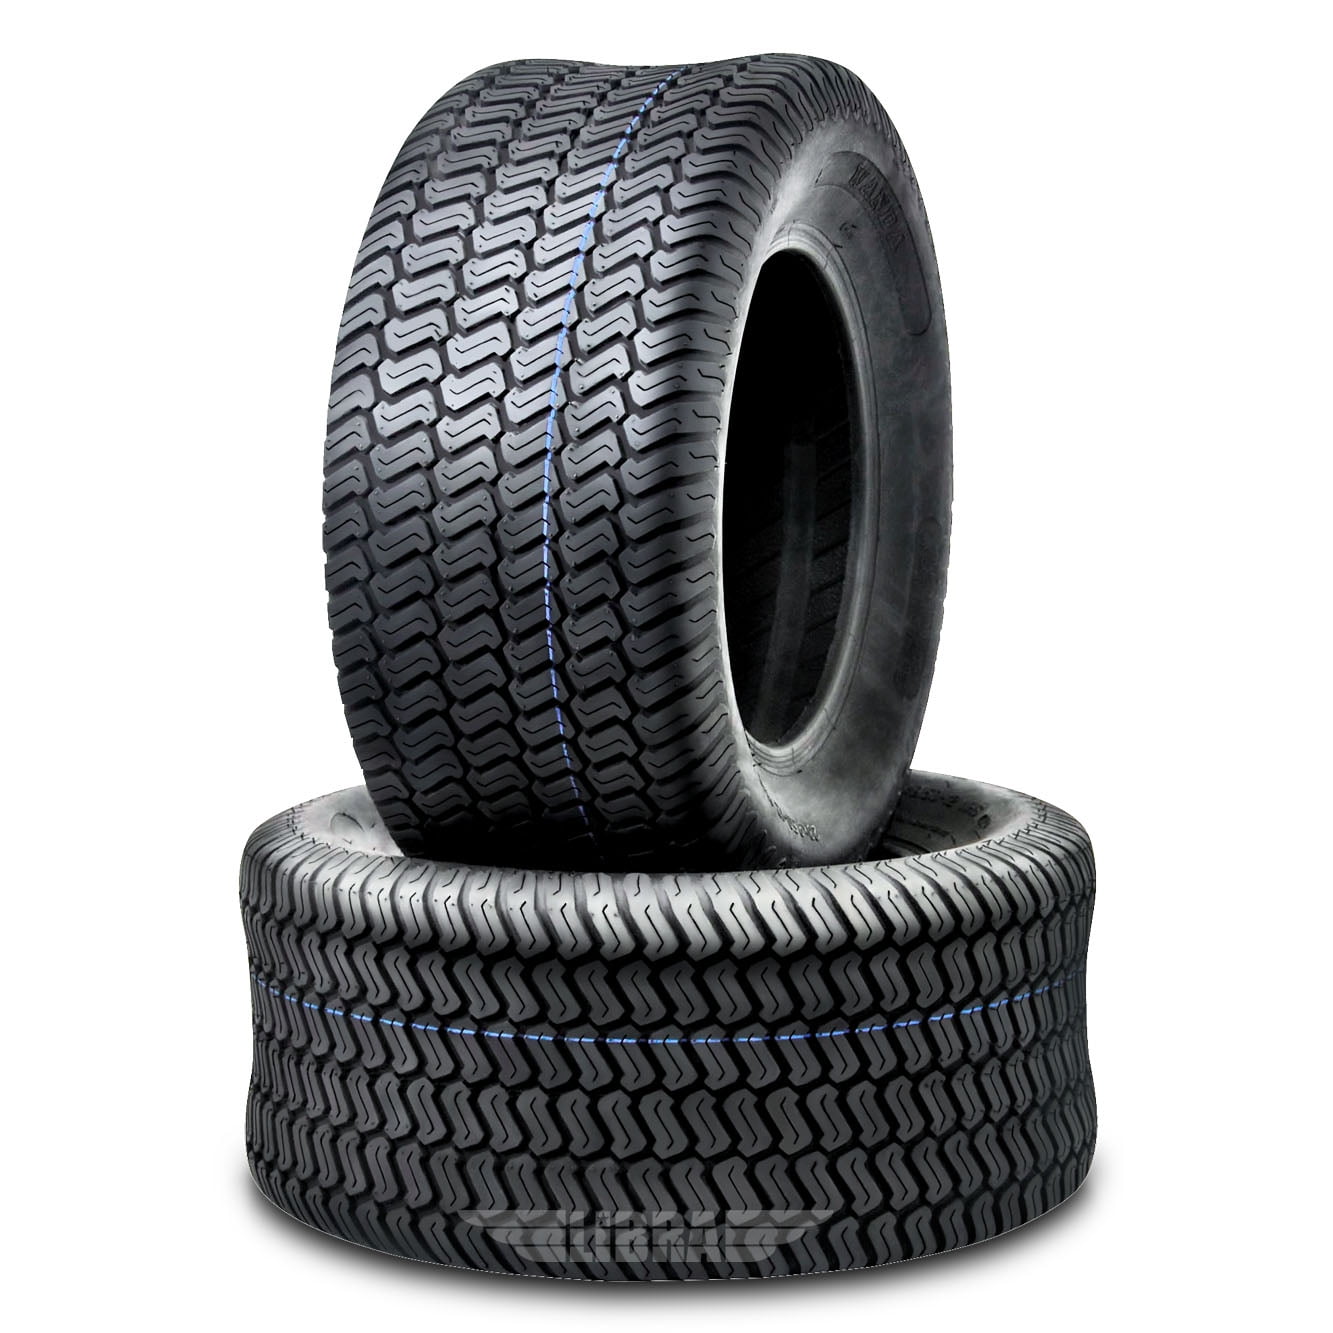 Belt 1 Small Rubber  film Tire,Keystone 8mm Tire Keystone R-8 Projector Tire 